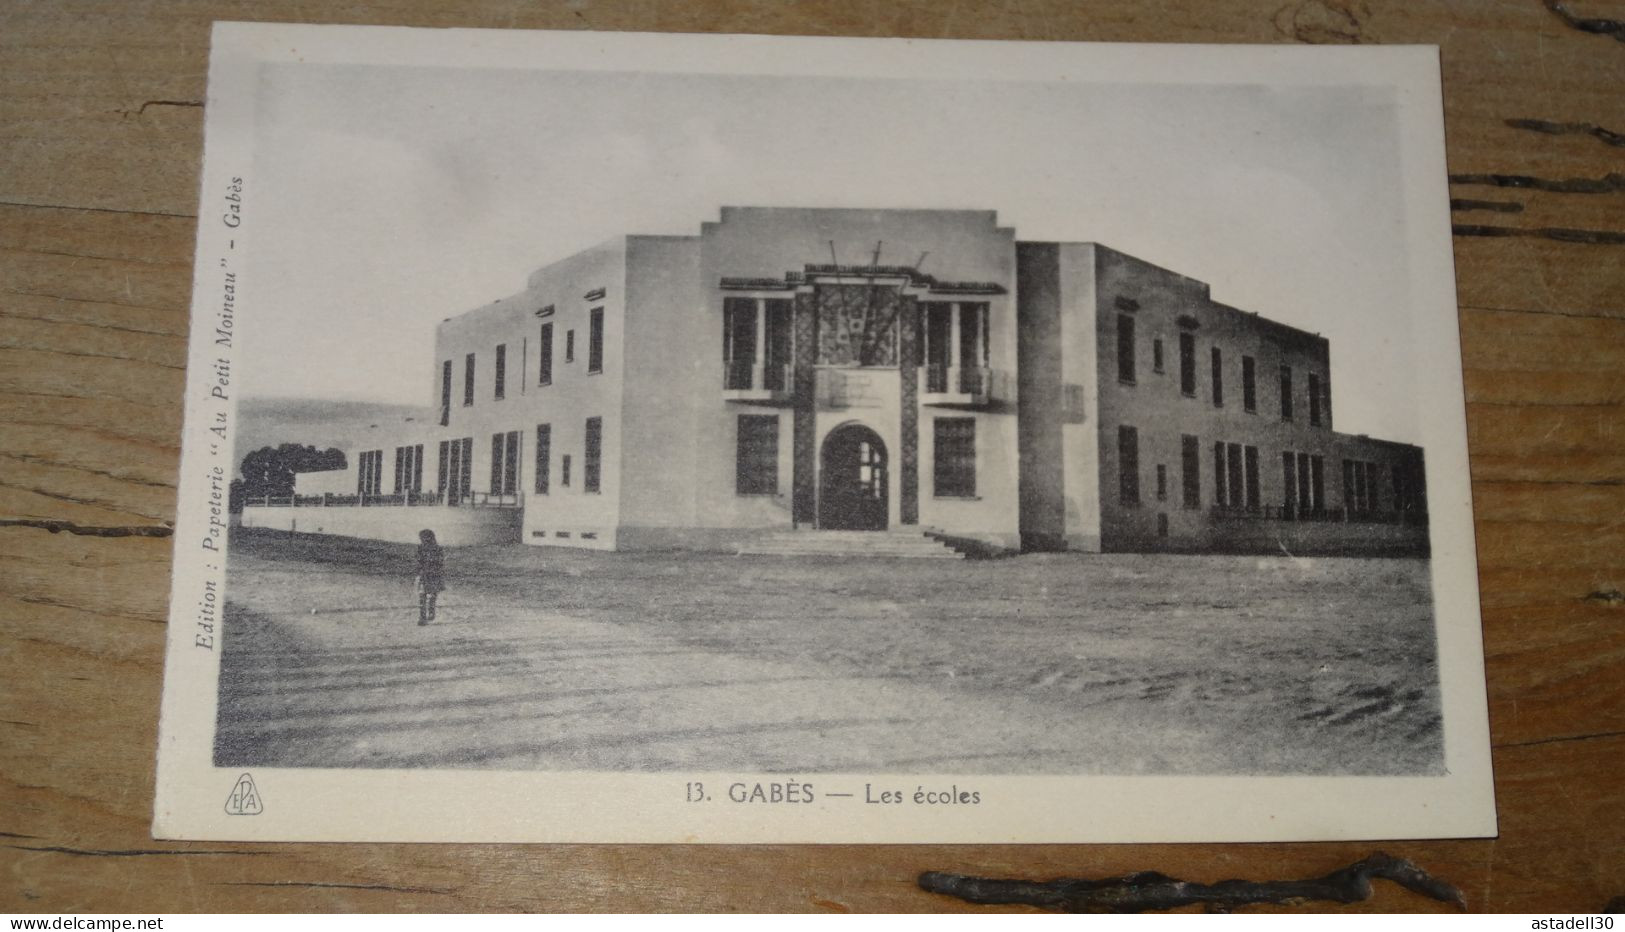 GABES, Les écoles ............... BE2-18962 - Tunisie